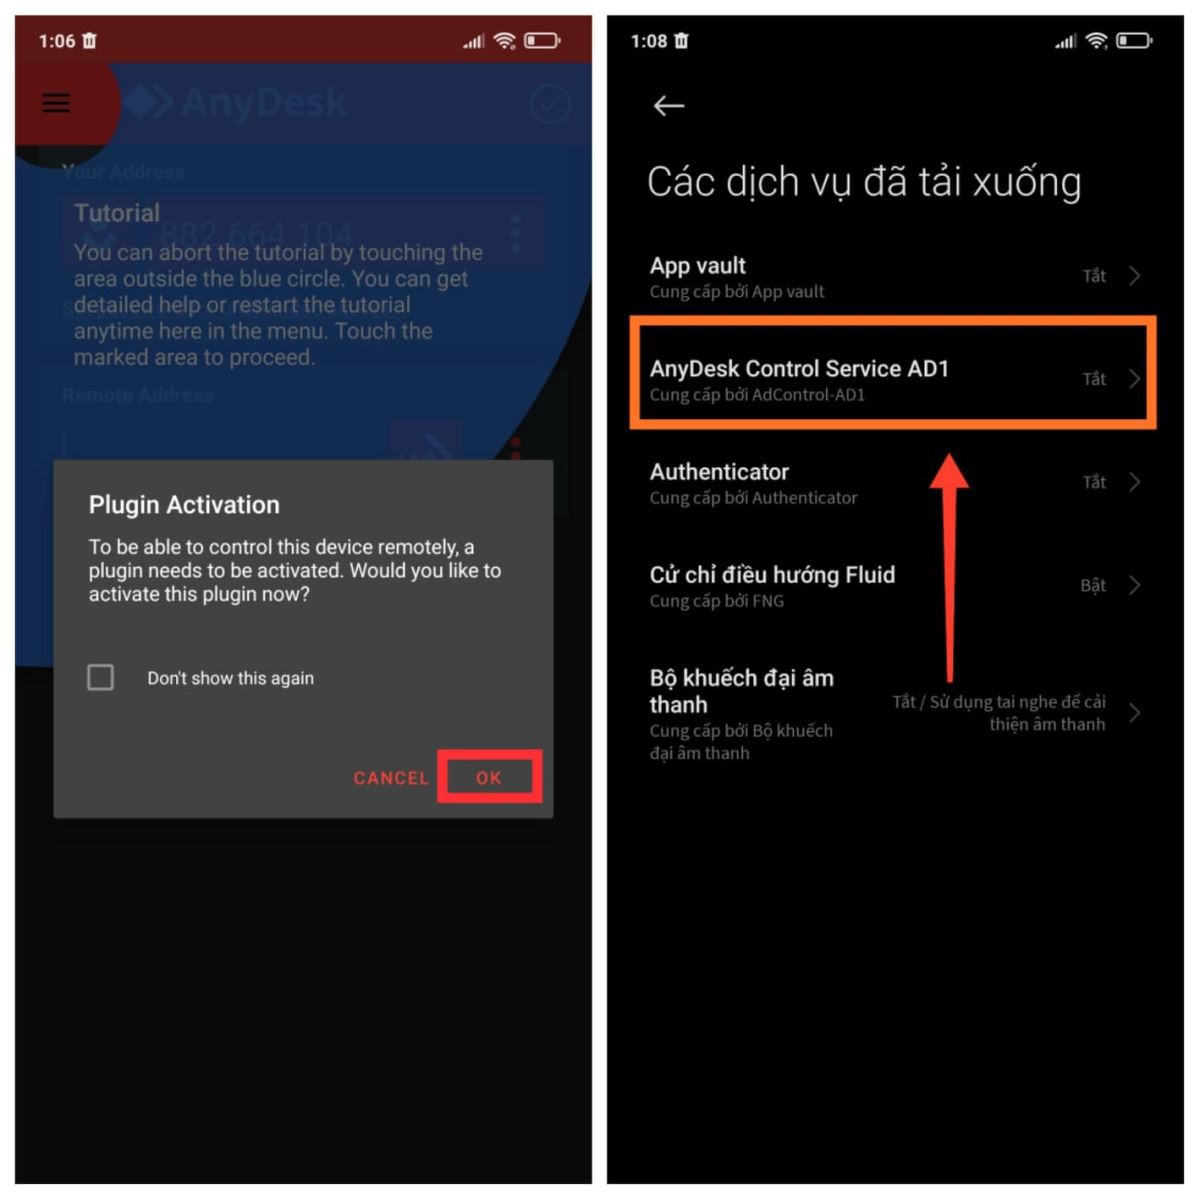 Vui lòng sử dụng Anydesk: Điều khiển từ xa điện thoại của bạn trên một thiết bị Android khác (3)